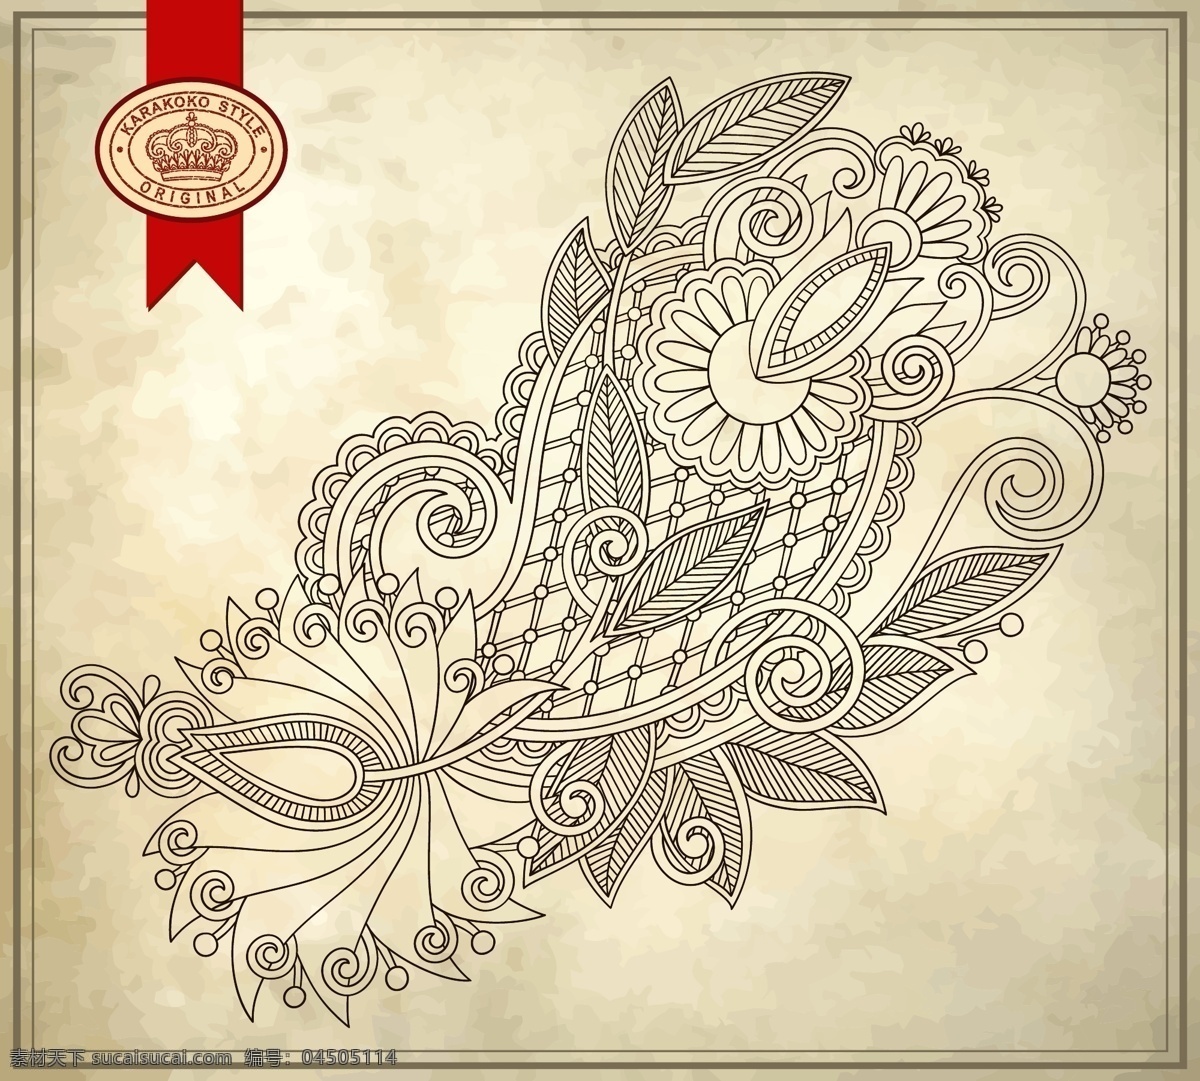 复古 手绘 花纹 背景 矢量 花朵 模板 设计稿 素材元素 藤蔓 线描 叶子 图案 源文件 矢量图